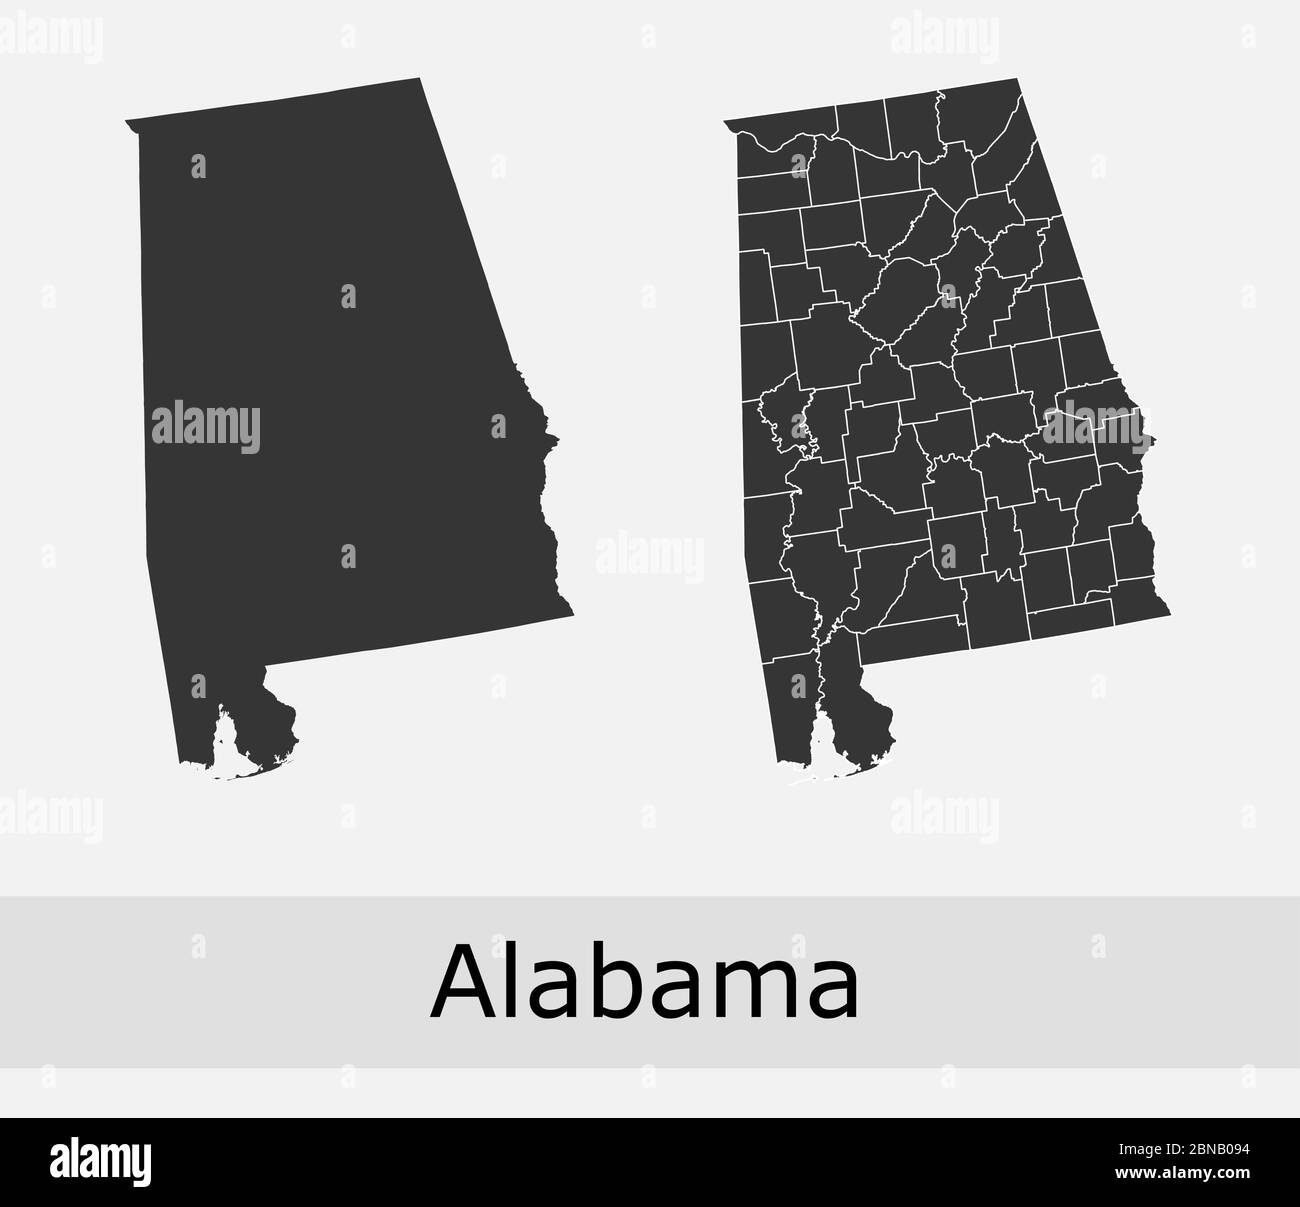 Alabama mappe vettoriali contorni contee, comuni, regioni, comuni, dipartimenti, frontiere Illustrazione Vettoriale